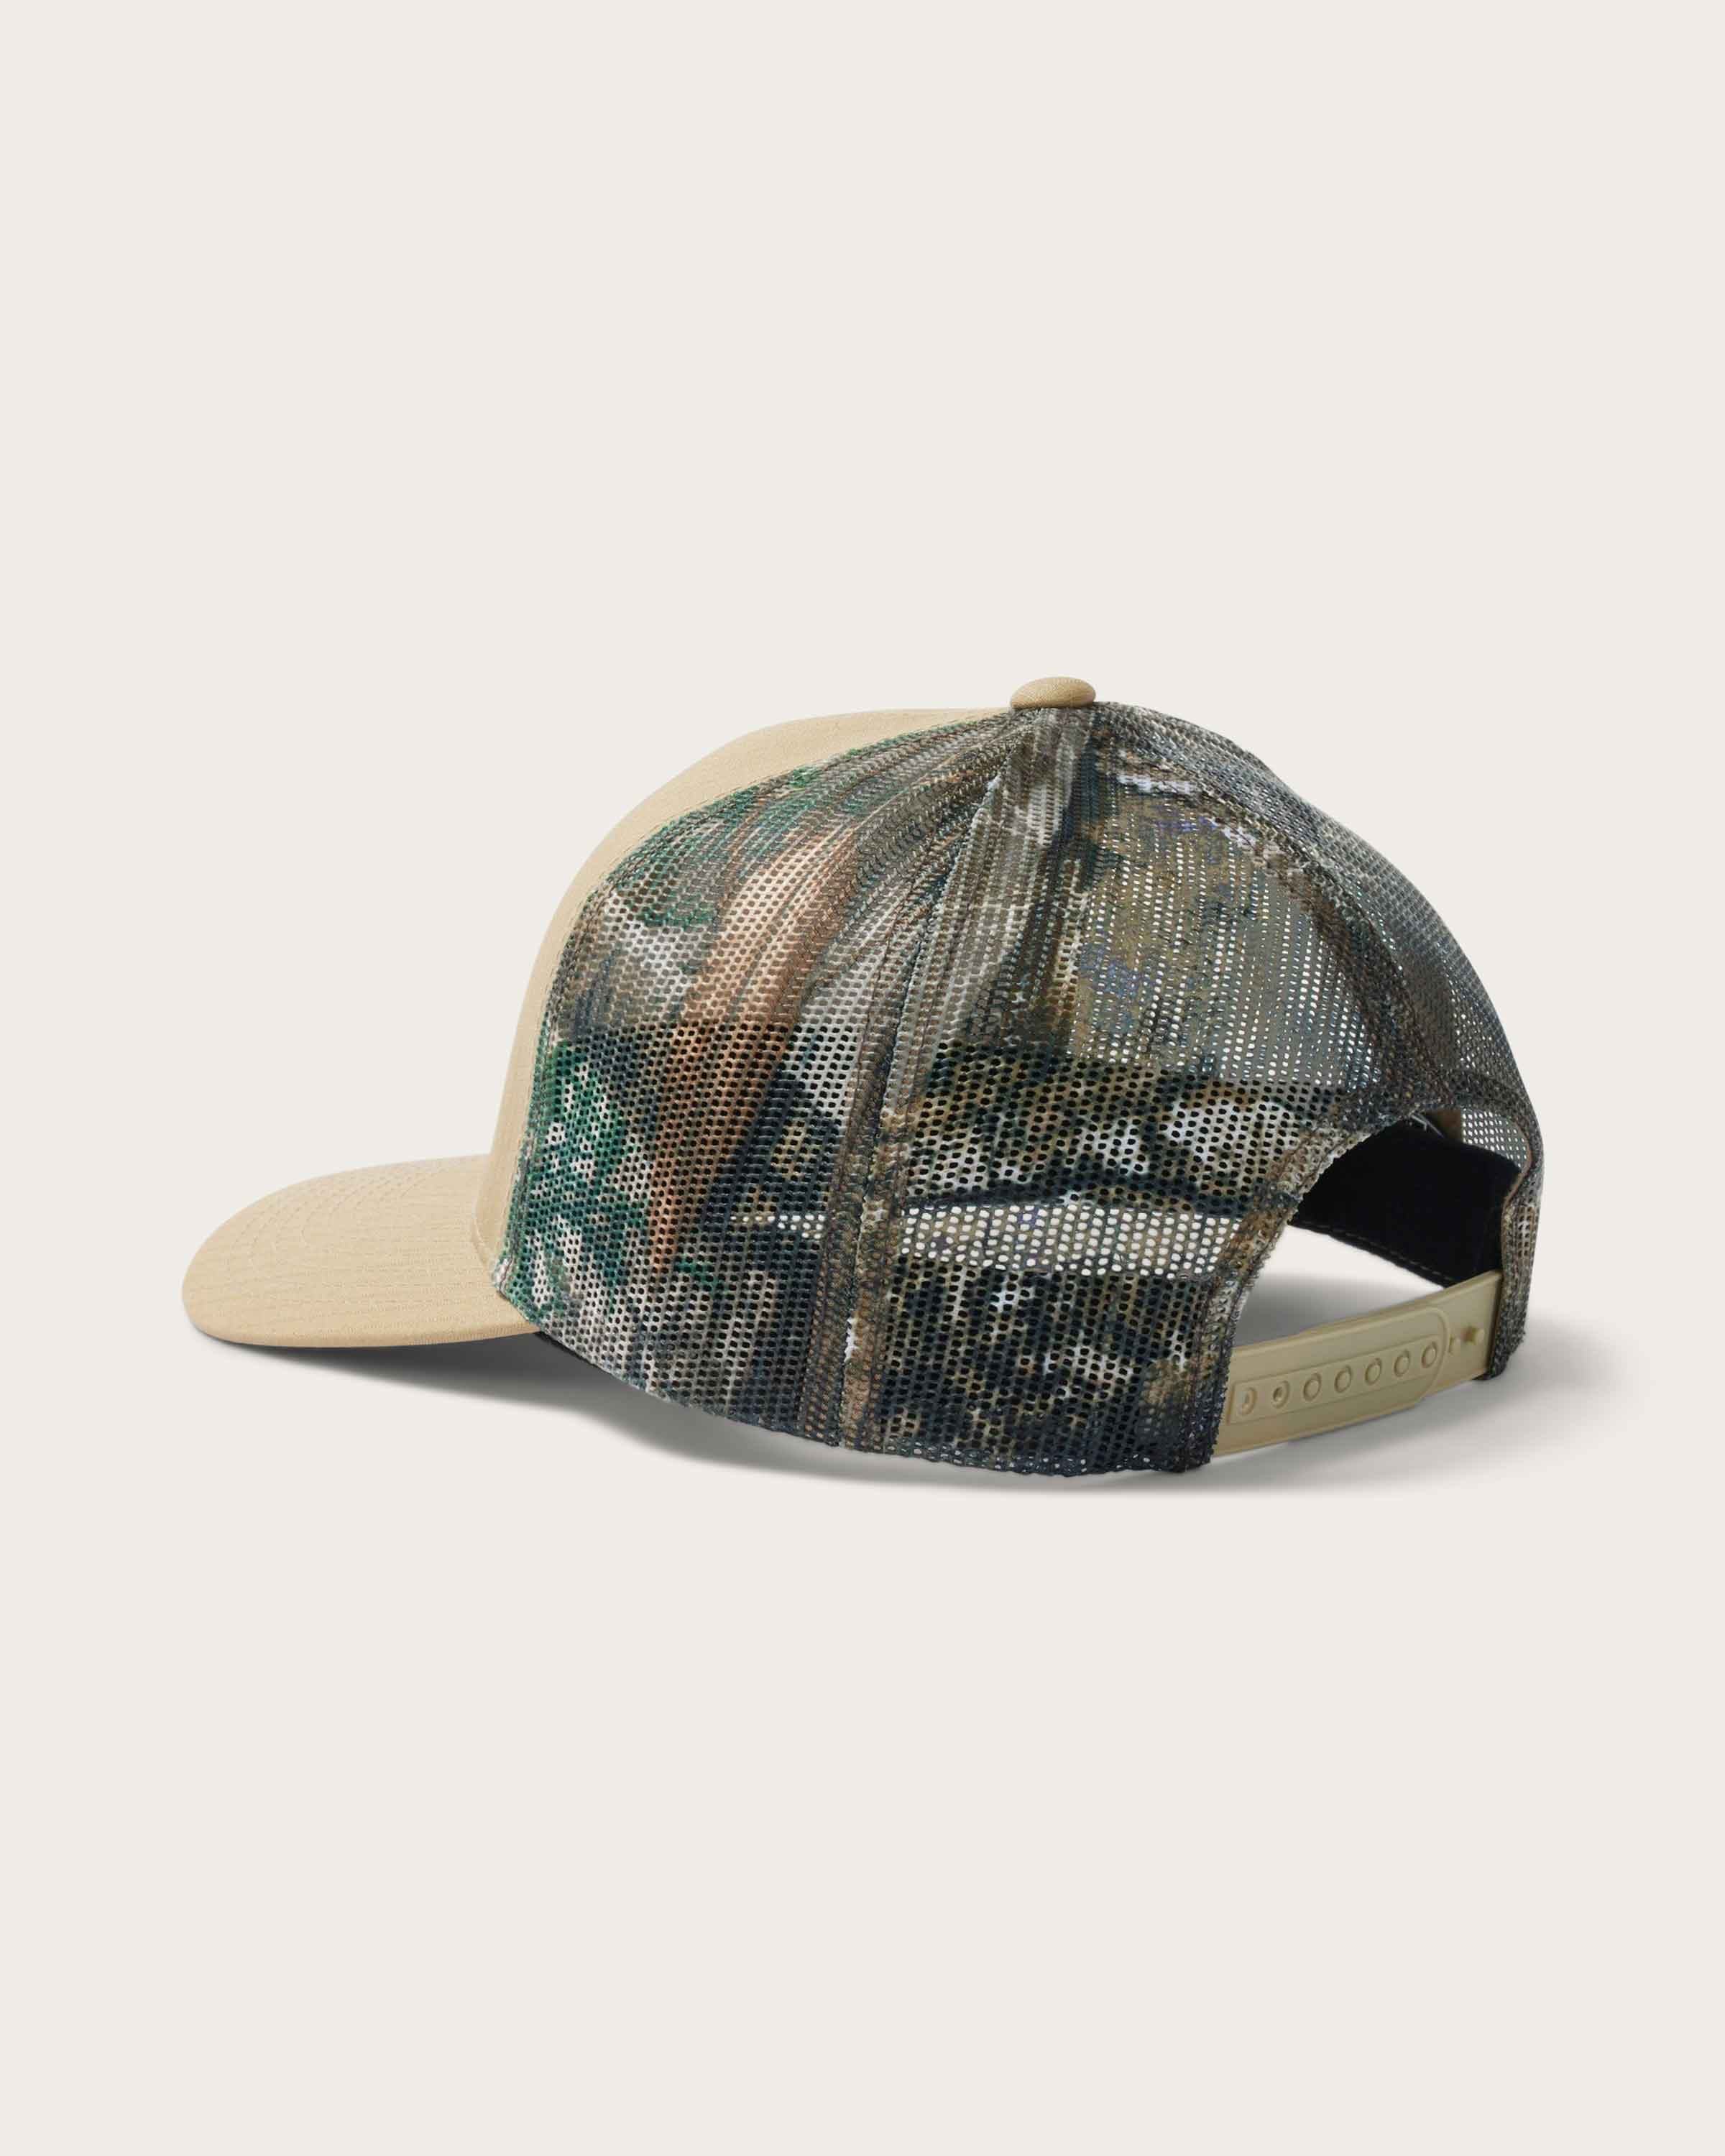 Huntsman Trucker Hat - Realtree® Camo - undefined - Hemlock Hat Co. Ball Caps